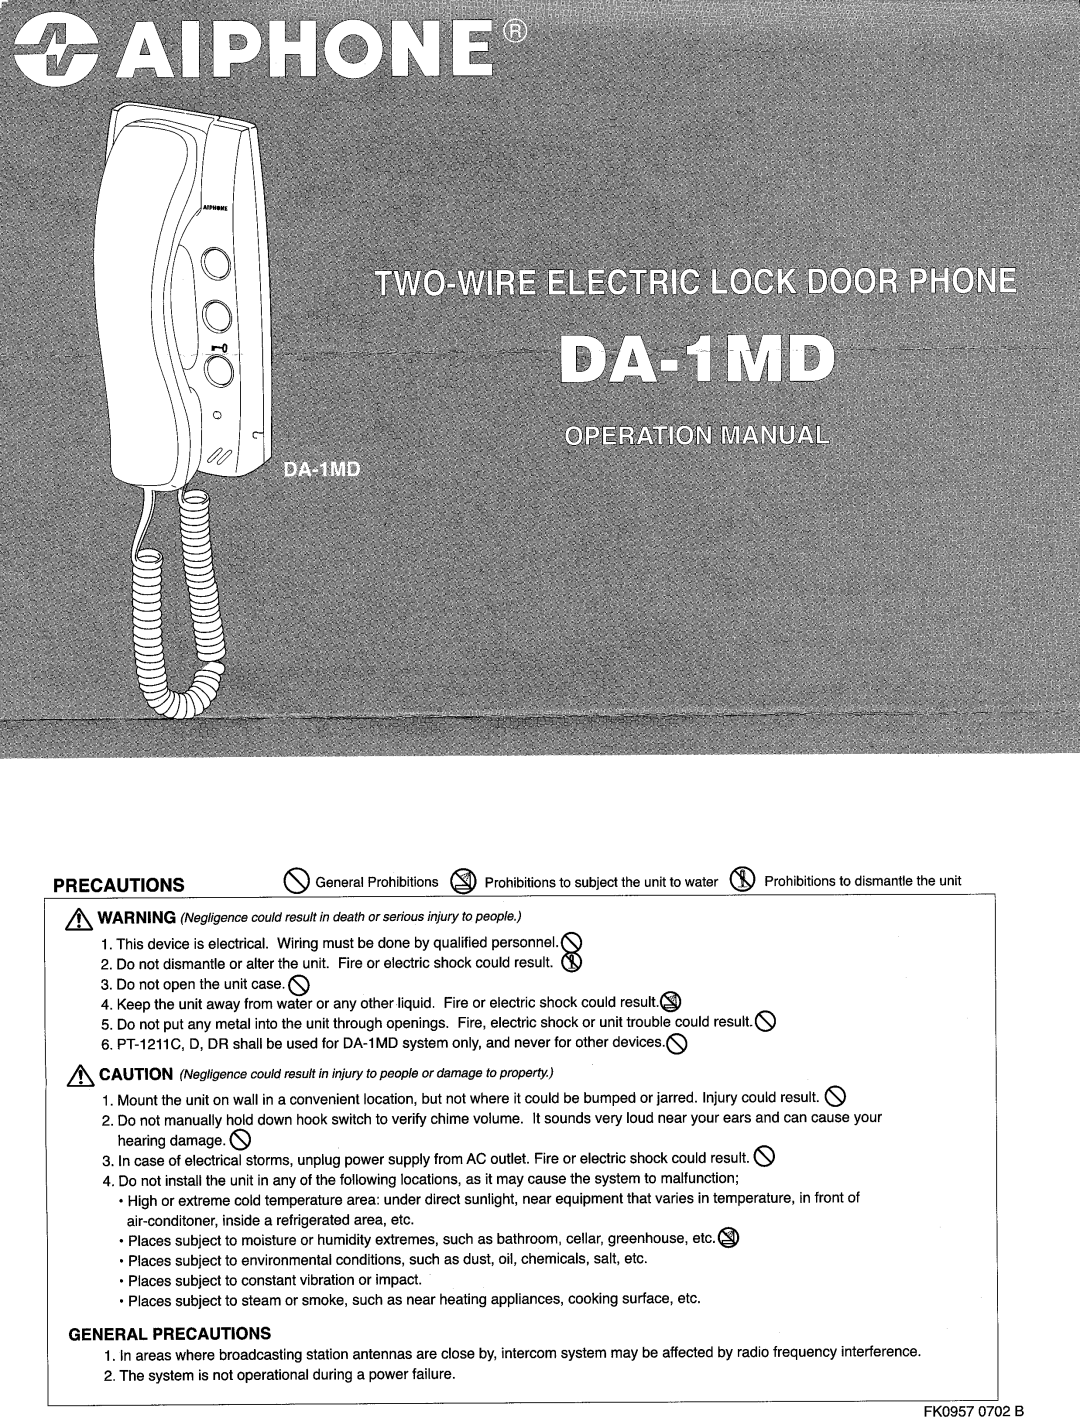 Aiphone DA-4DS, DA-1MD, DA-4DG, DA-2DG, DA-2DS manual 